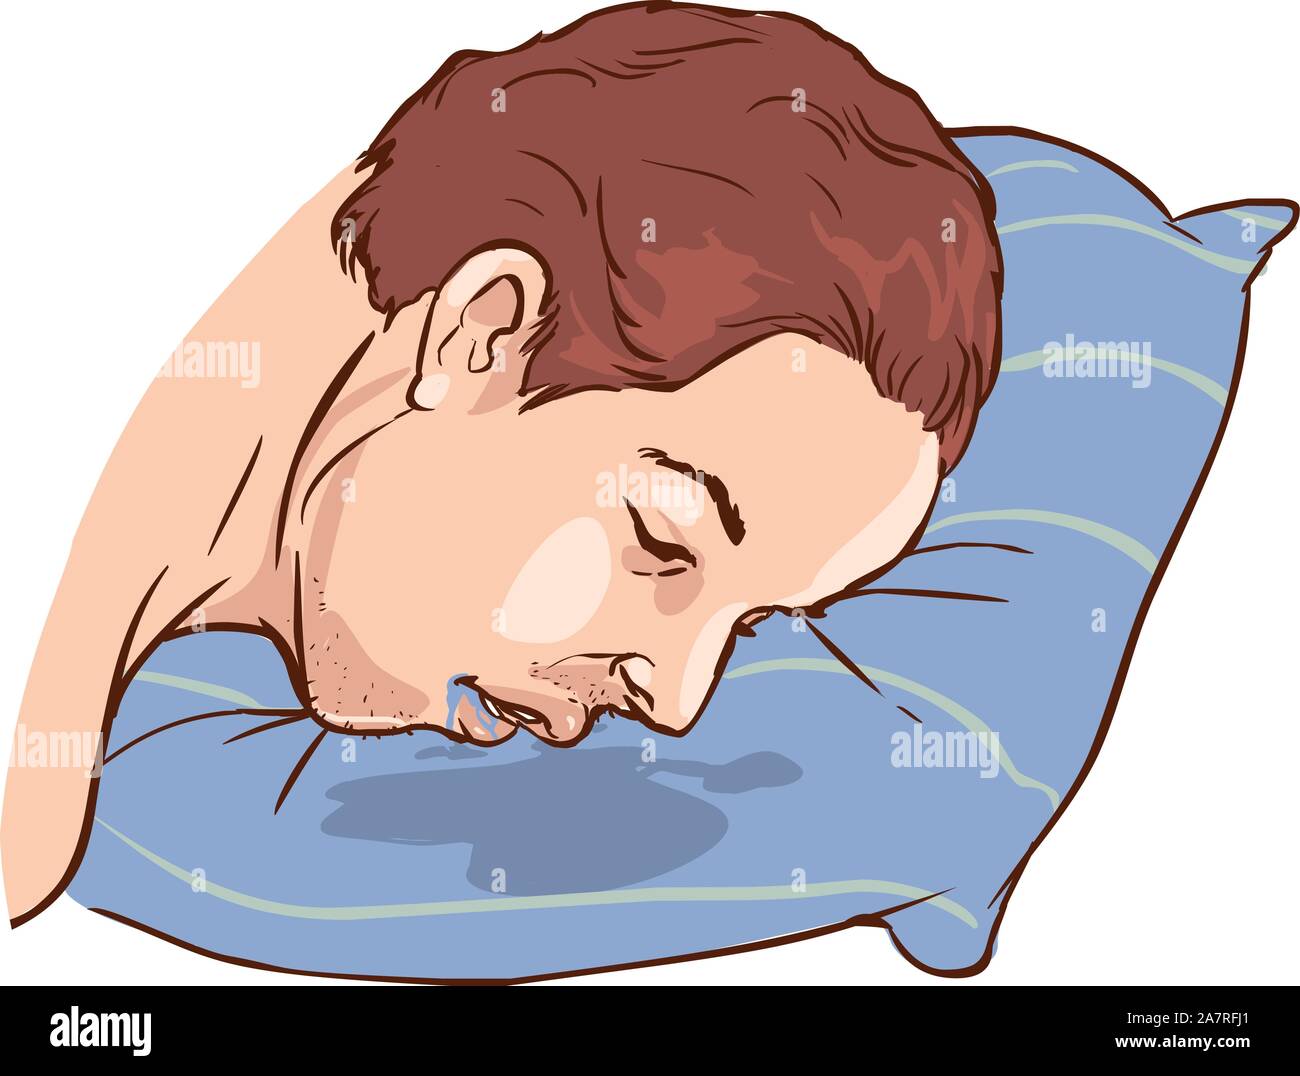 Часто давлюсь слюной. Слюни на подушке. Подушка и спящий человек.